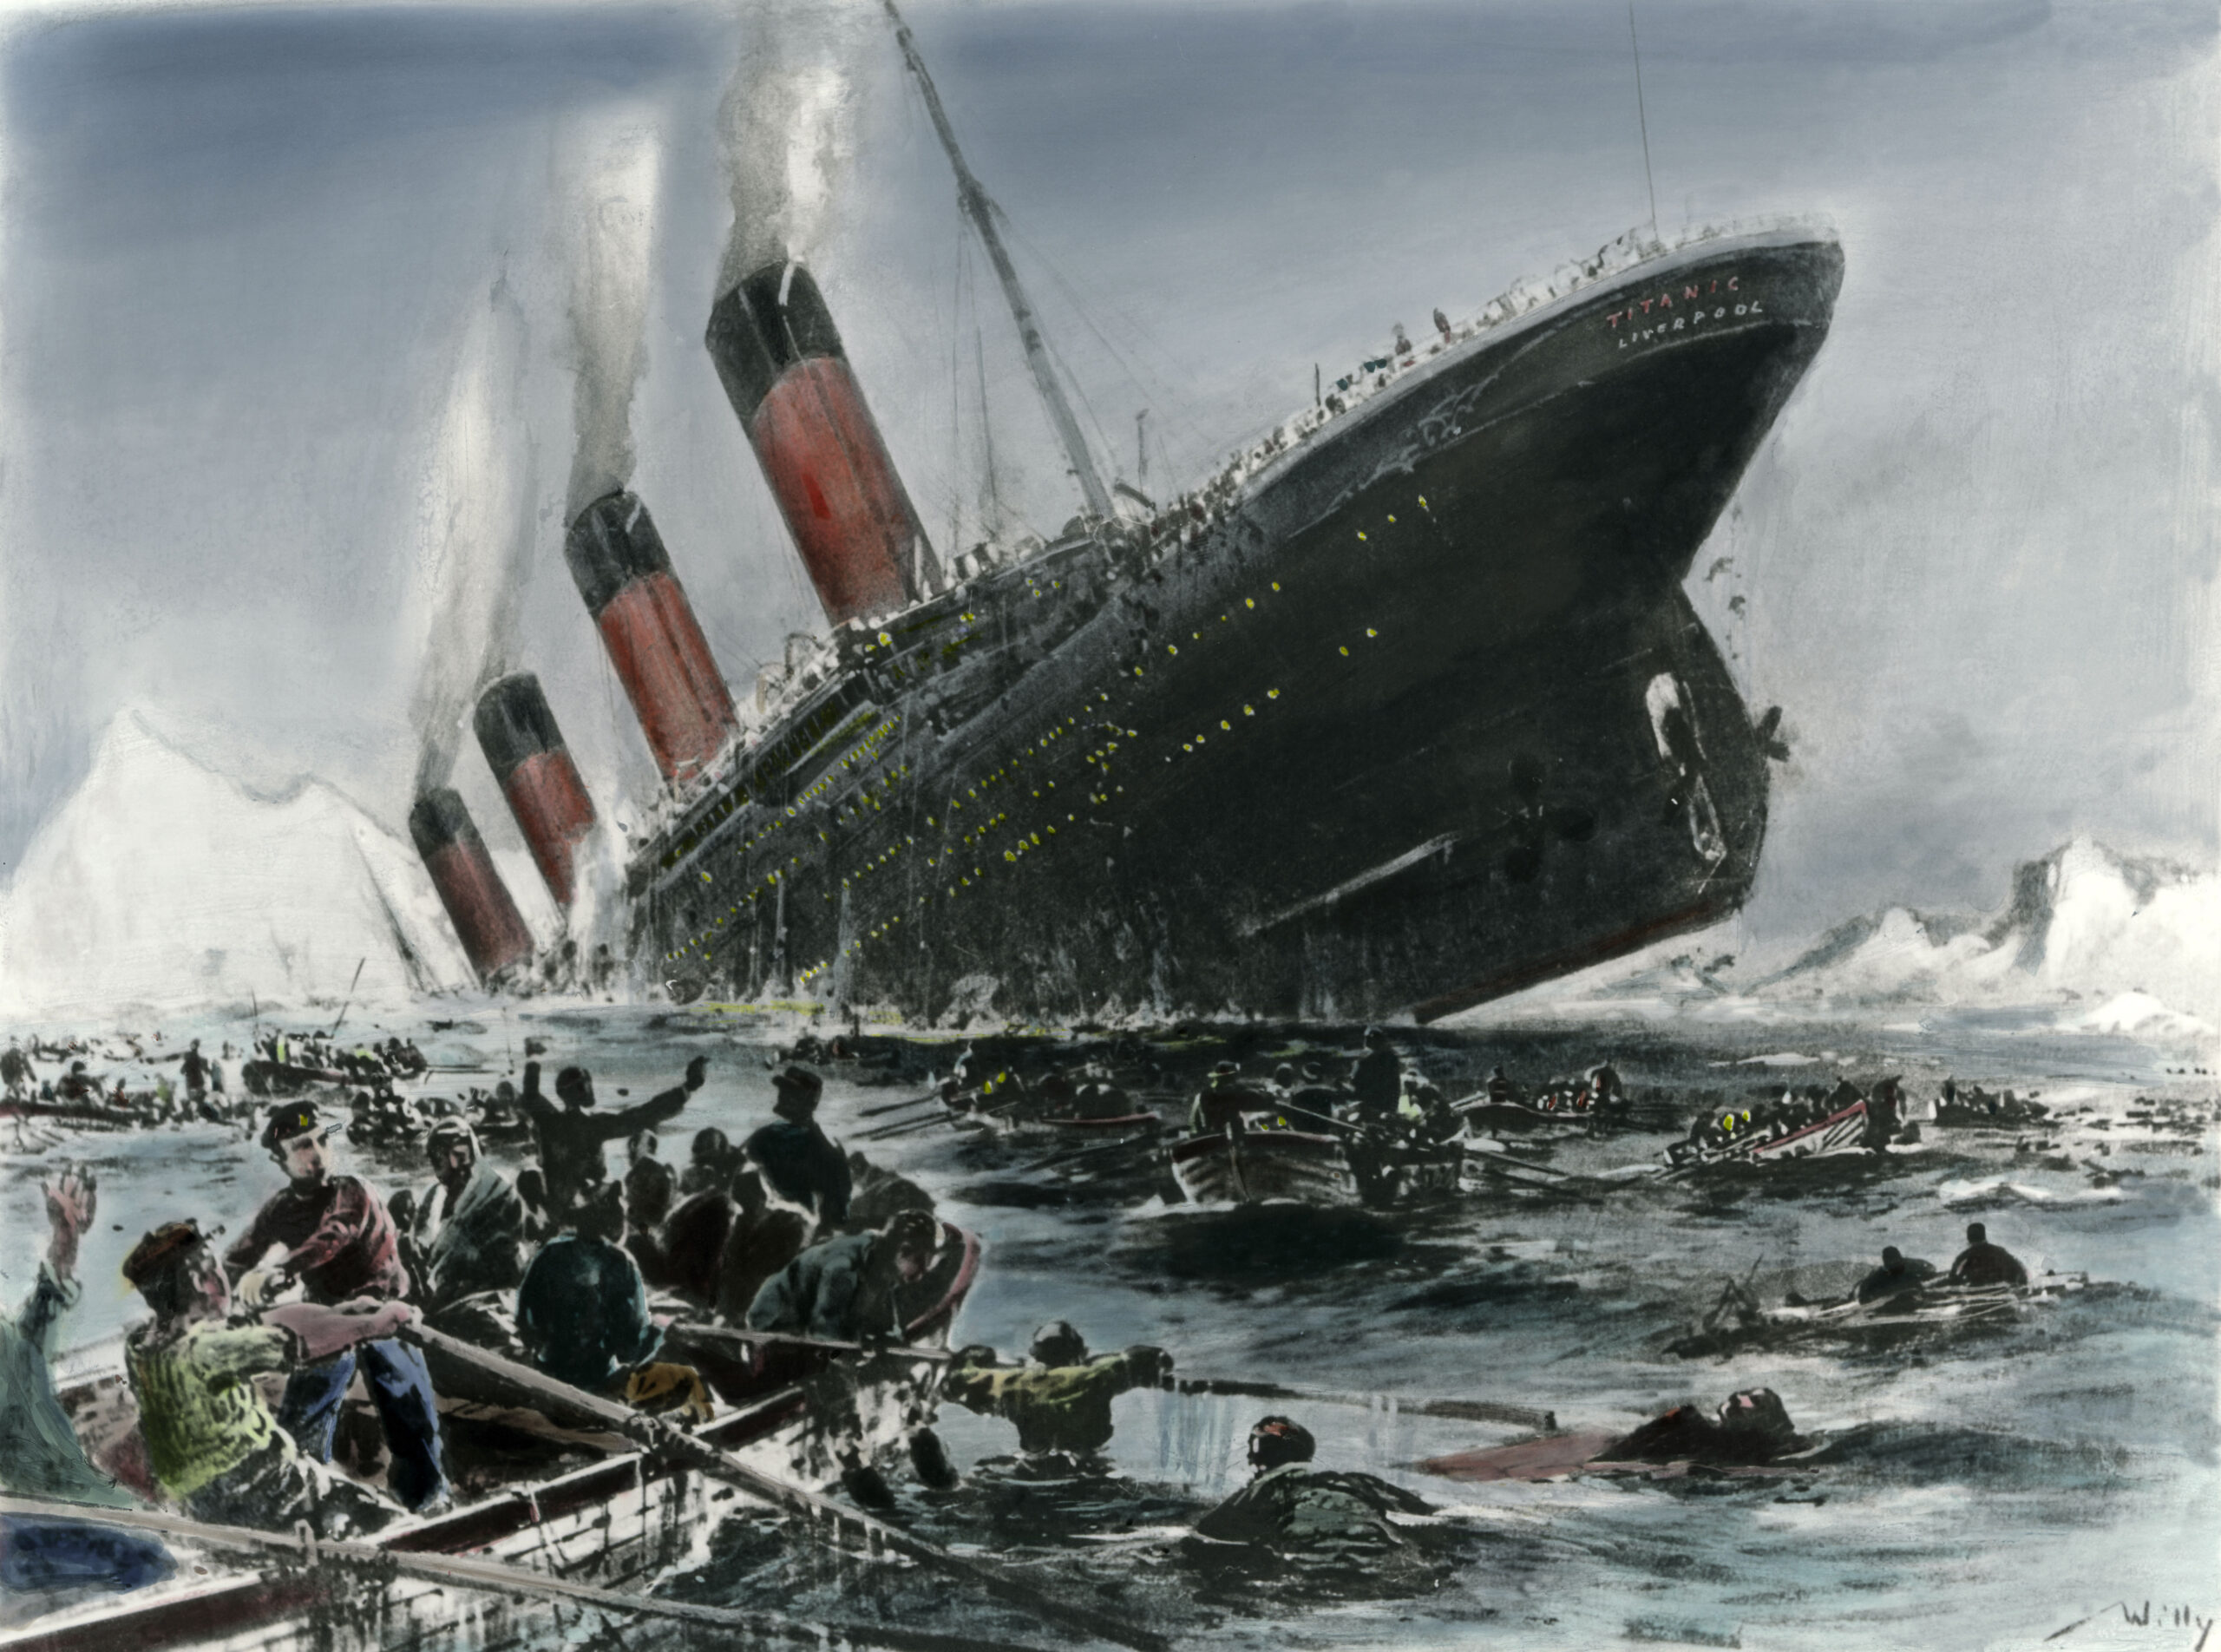 Ein Gemälde der untergehenden Titanic